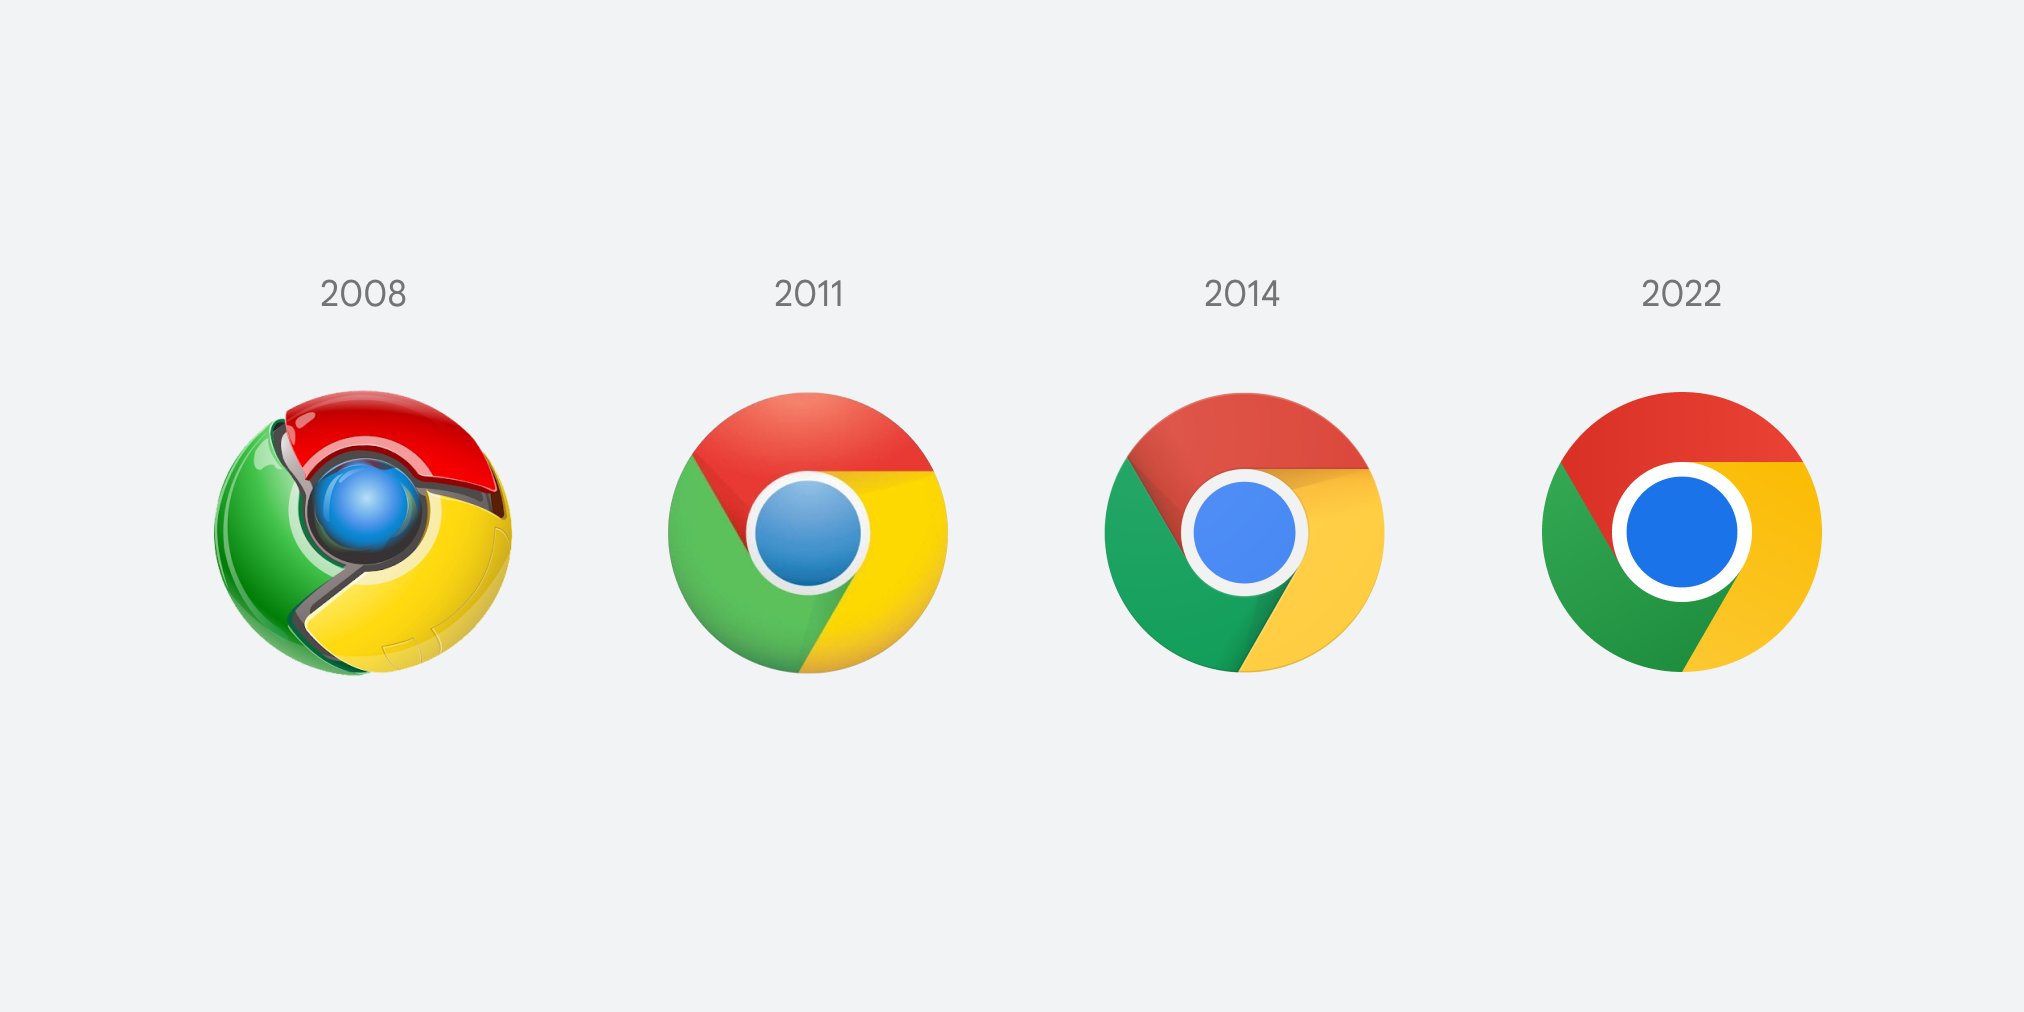 Google cambió su logotipo después de 8 años. ¿Puedes ver la diferencia?